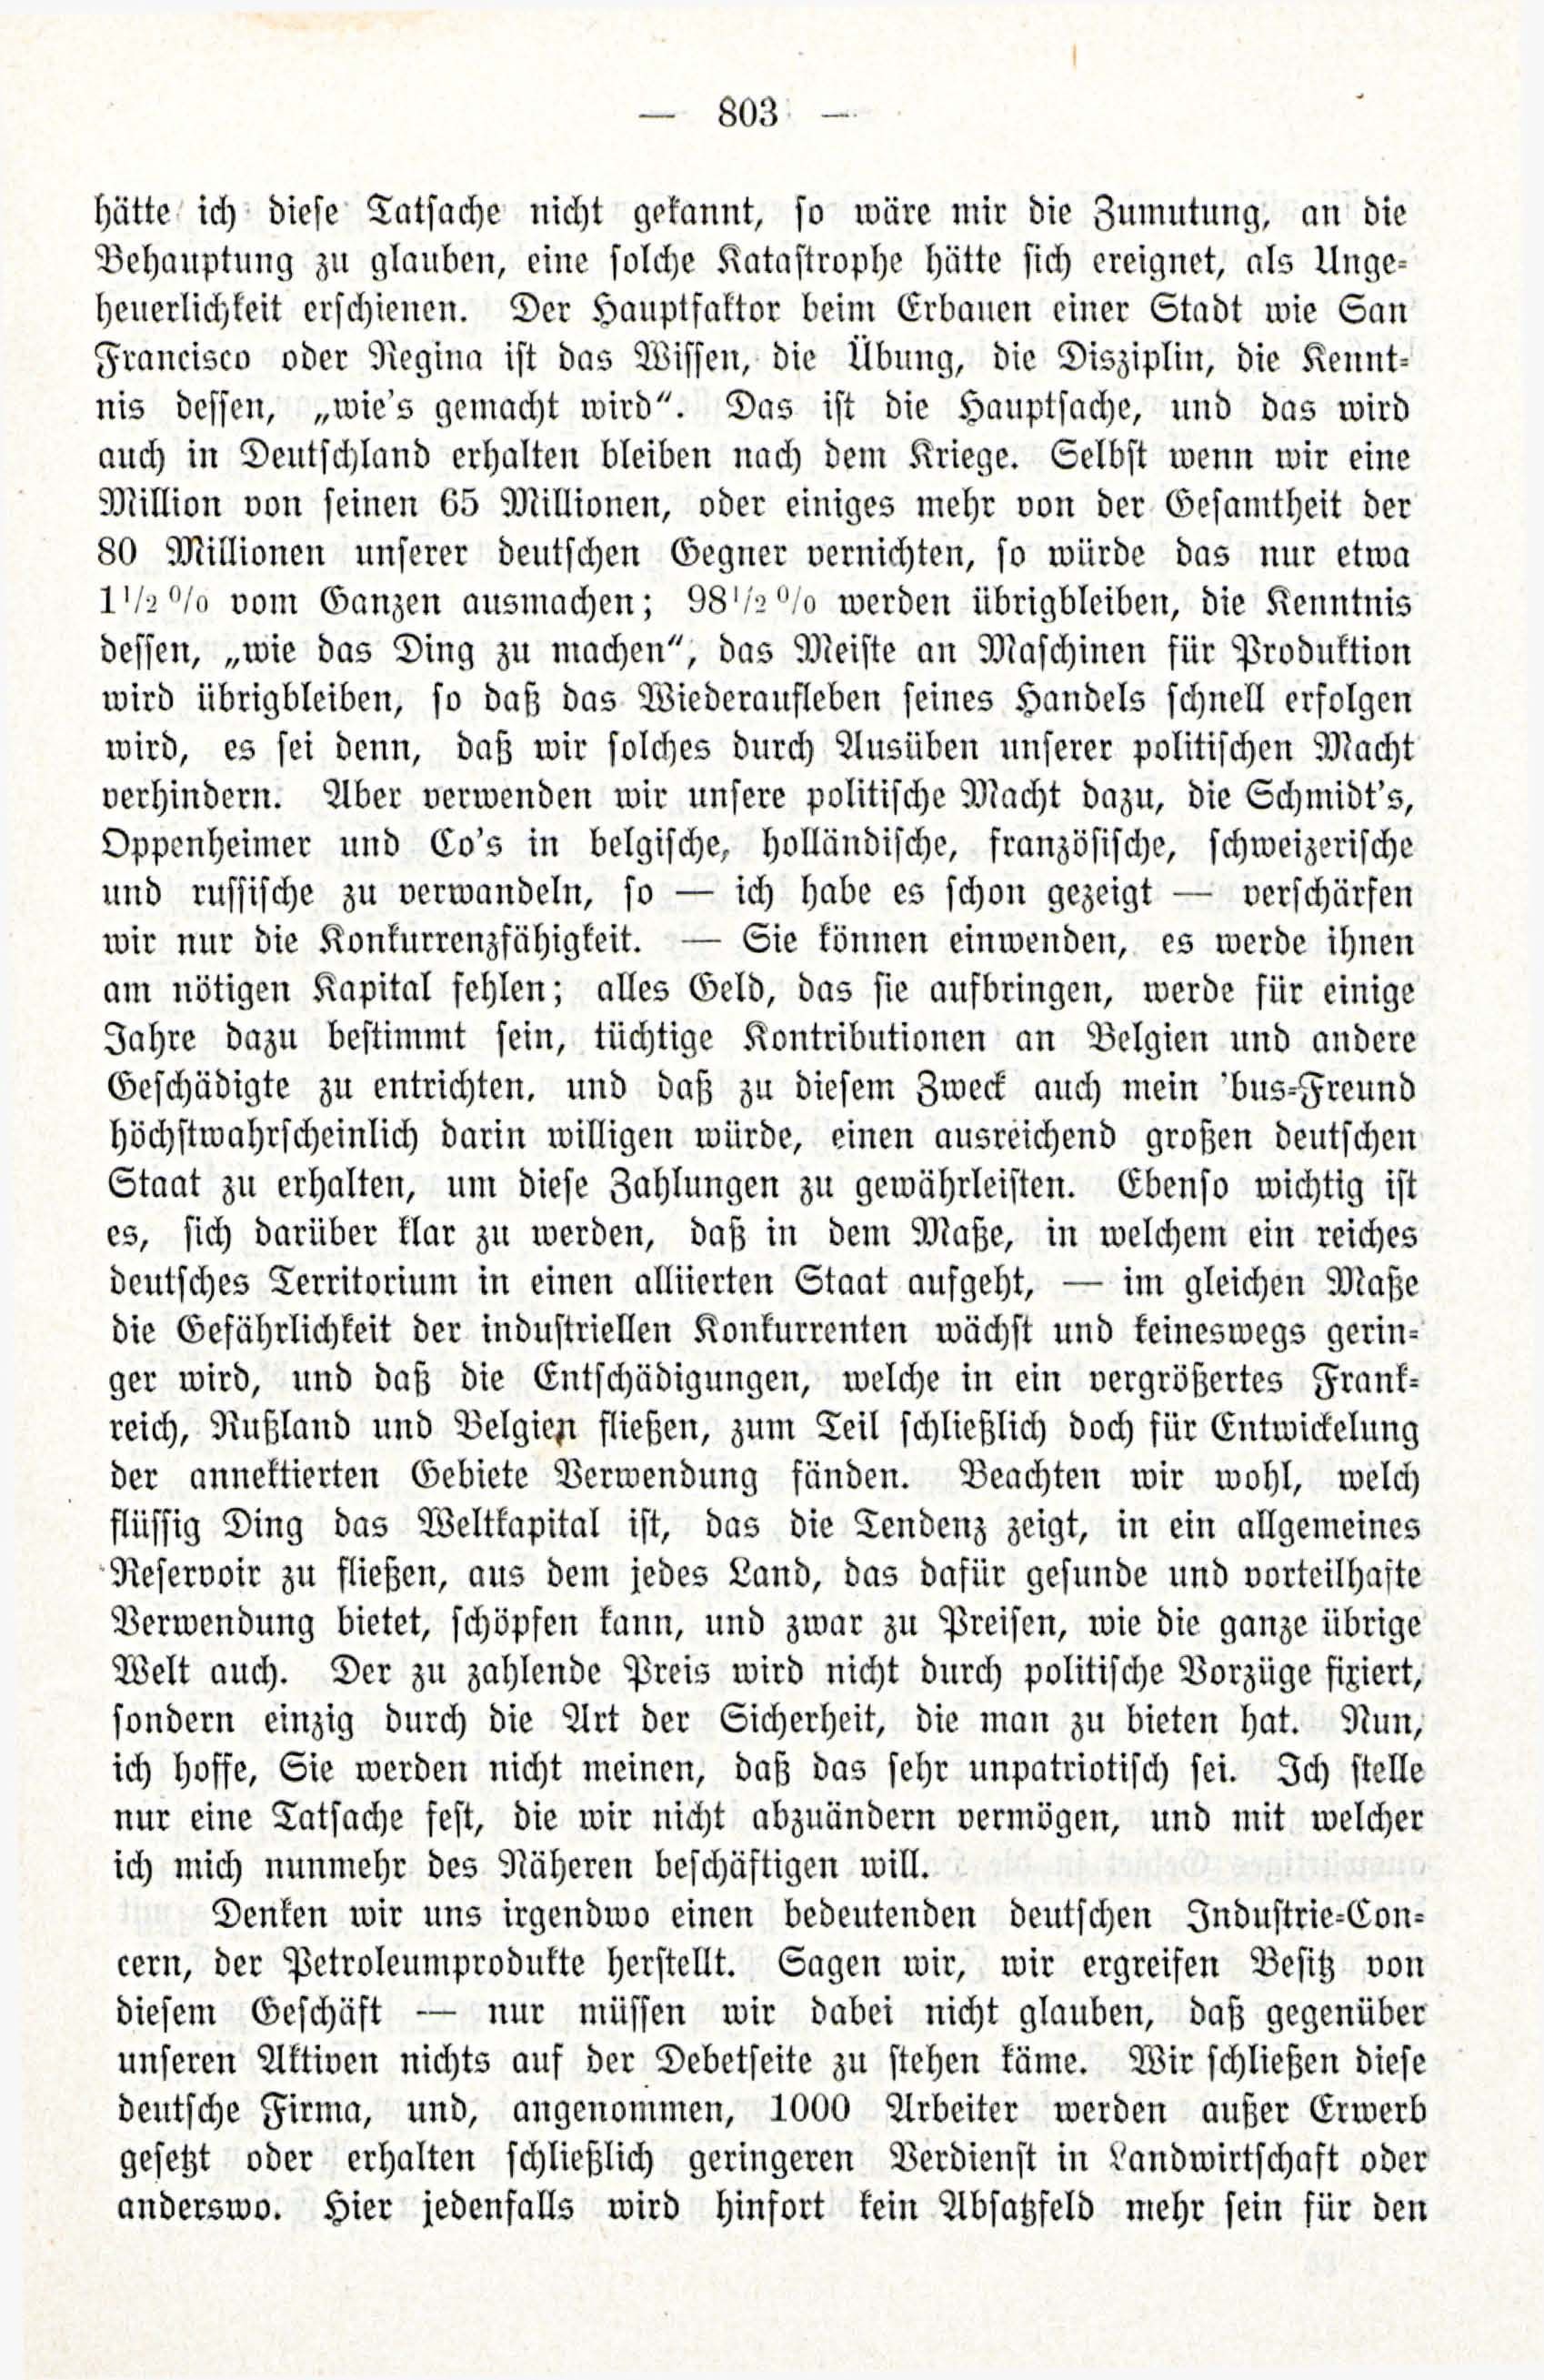 Deutsche Monatsschrift für Russland [3/12] (1914) | 19. (803) Main body of text